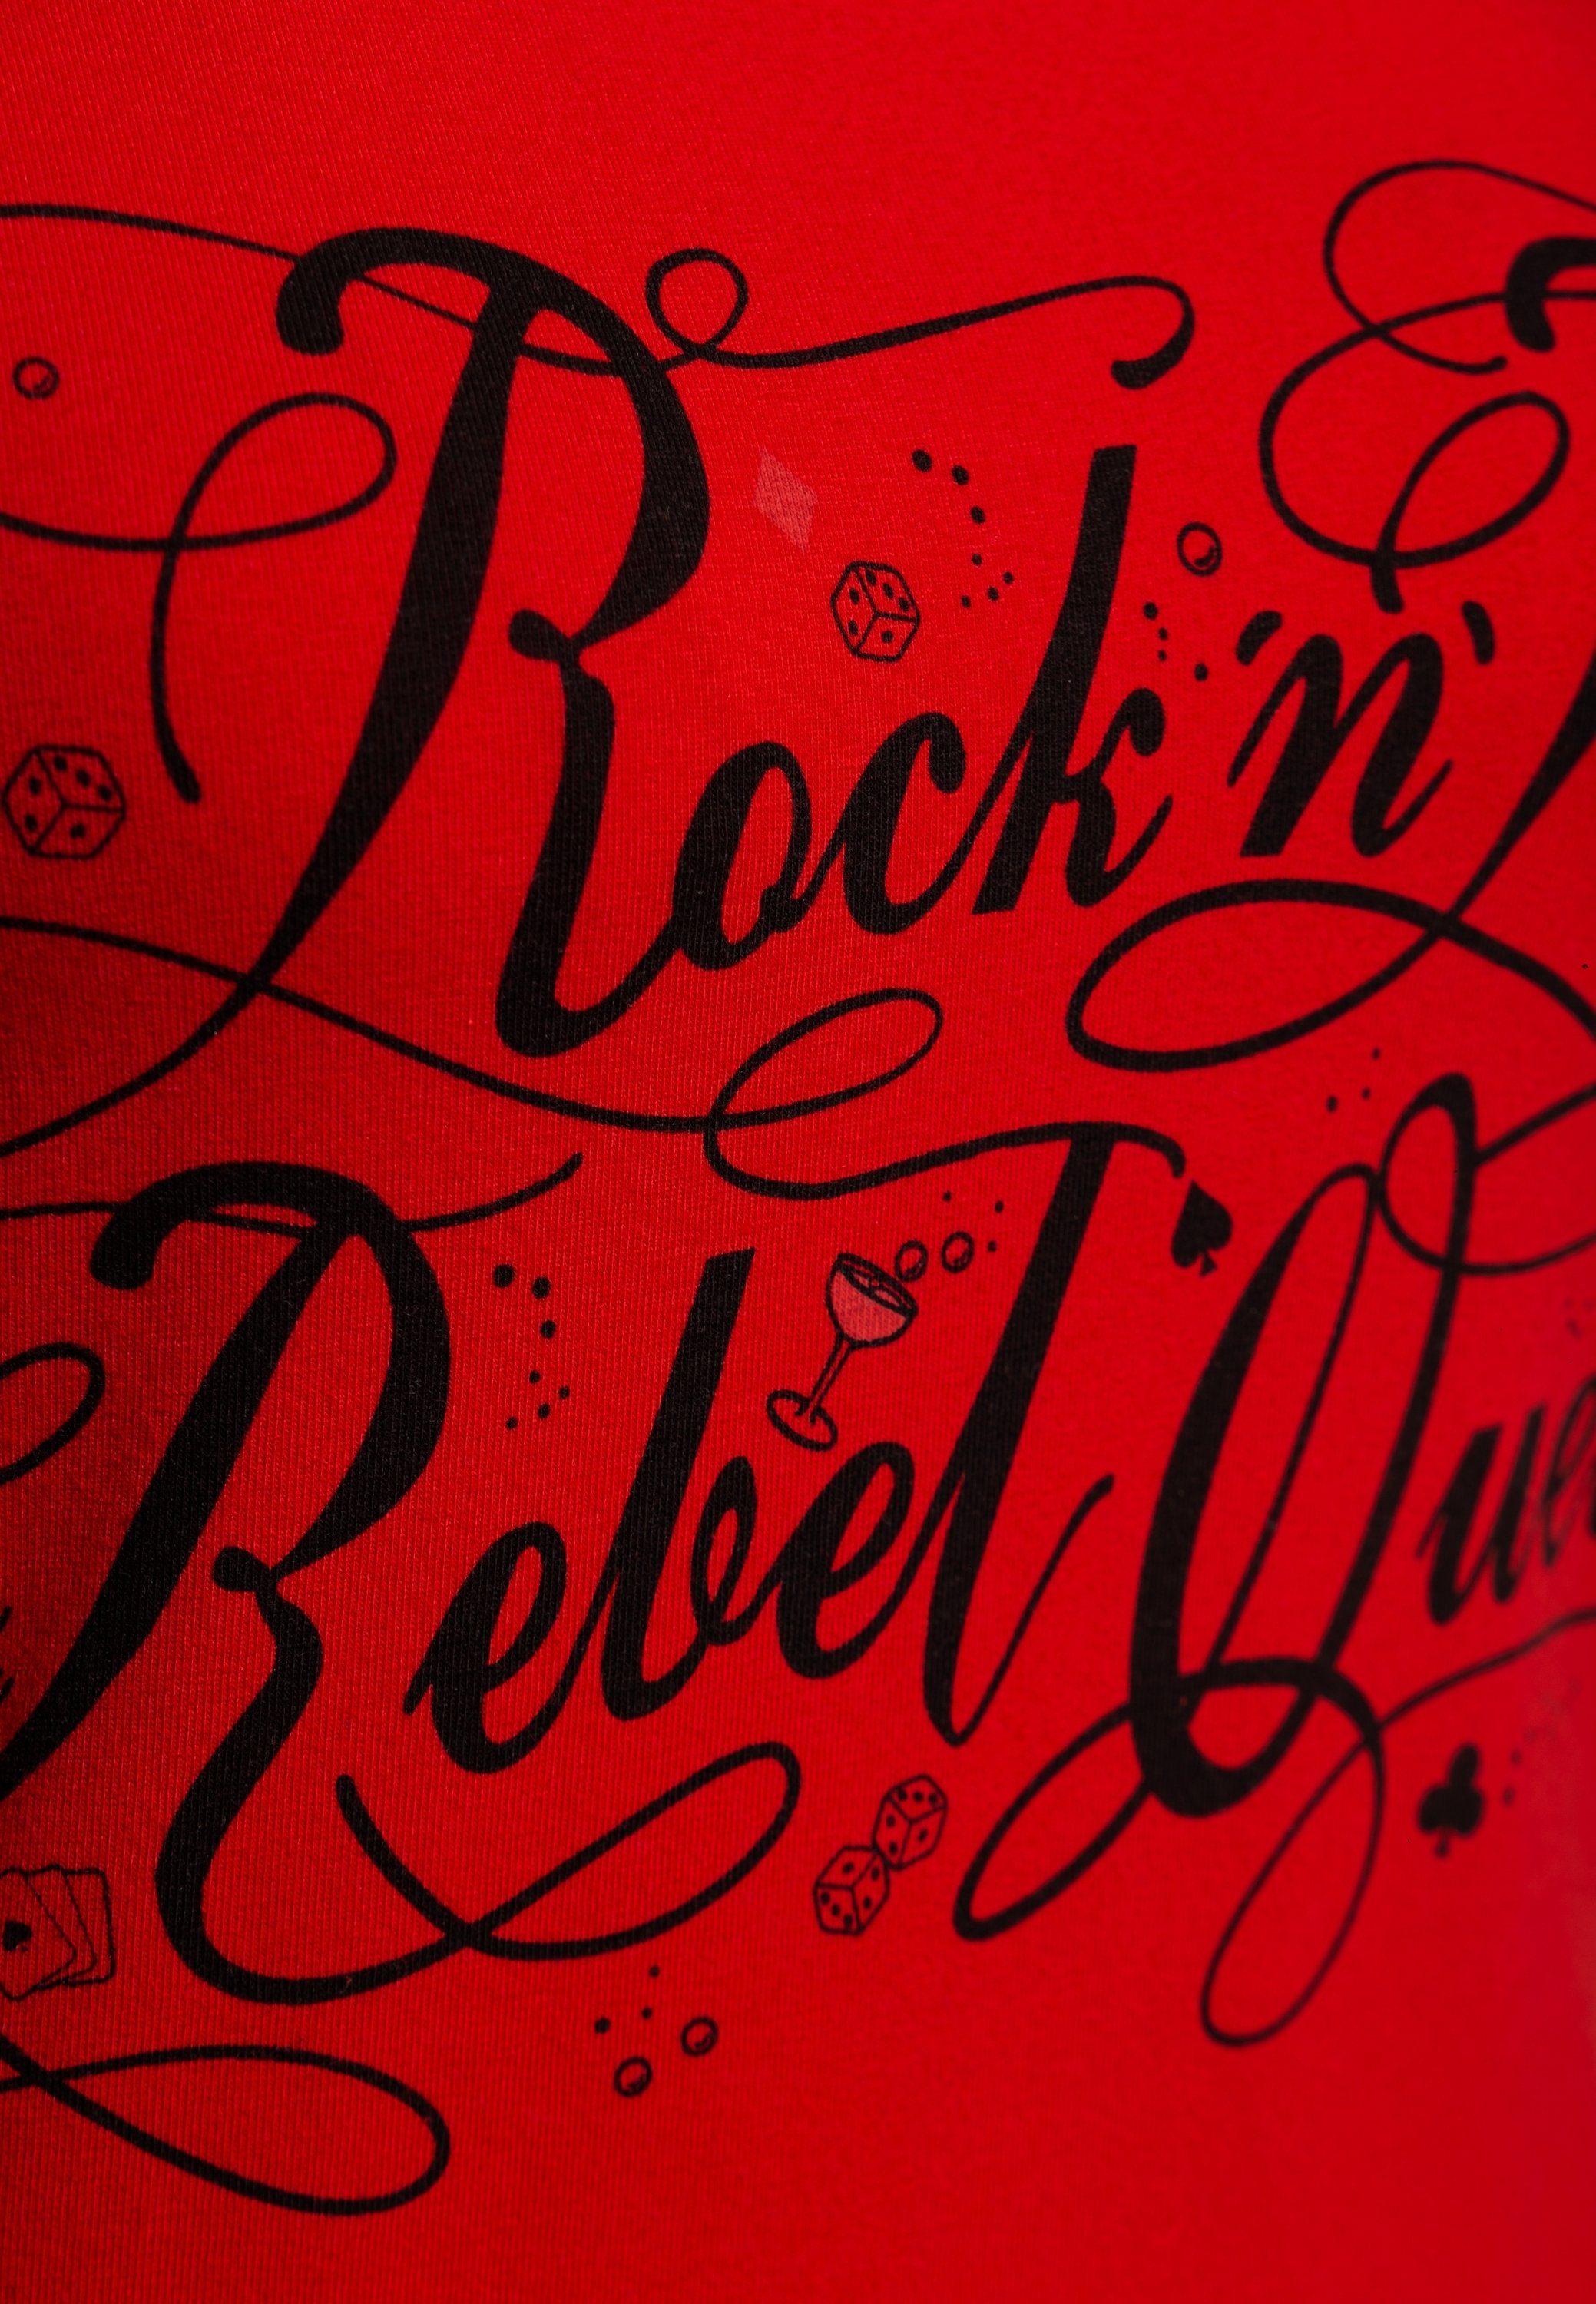 Rebel QueenKerosin mit Vintage Print Queen Front Statement rot Print-Shirt Rock'n'Roll (1-tlg)